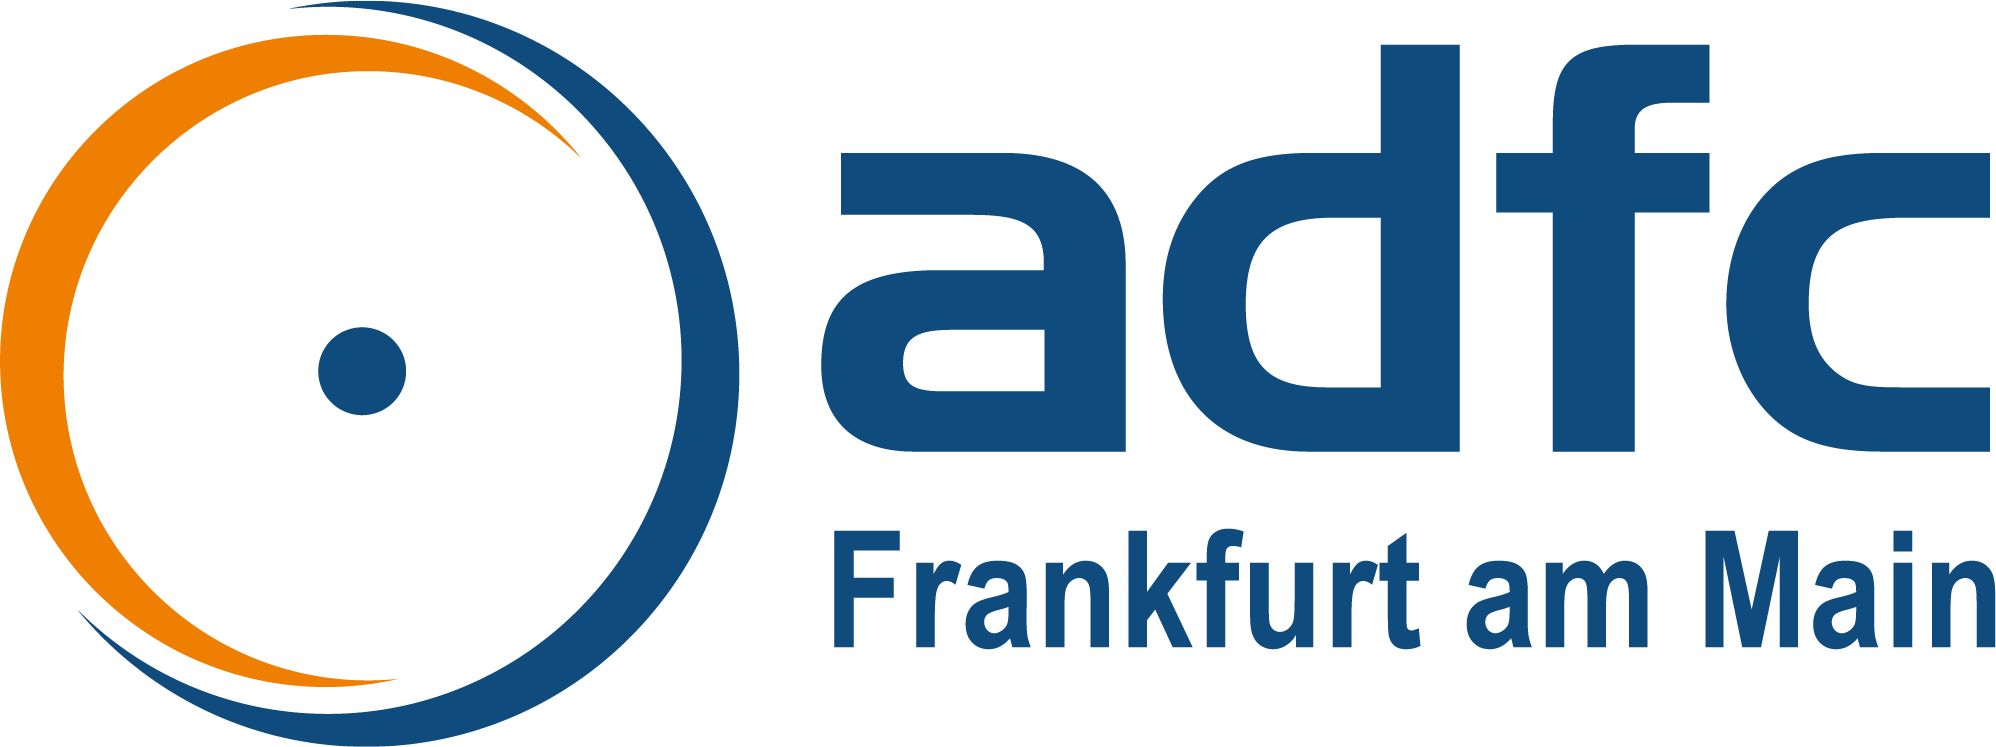 Frankfurt Aktuell 2005-05